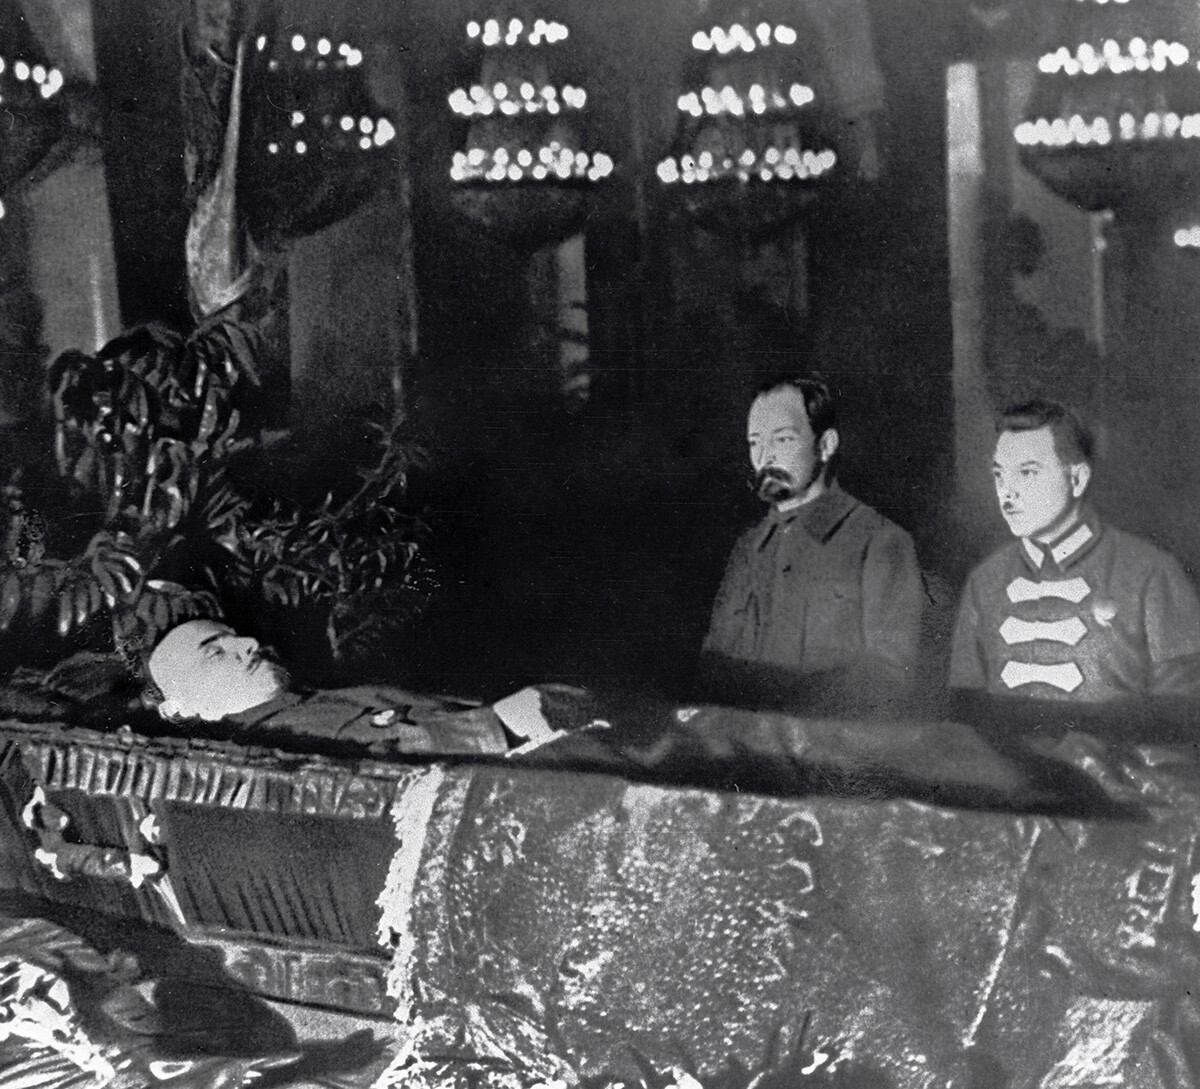 Kliment Voroshilov (R) and Felix Dzerzhinsky (L) at Vladimir Lenin's coffin.